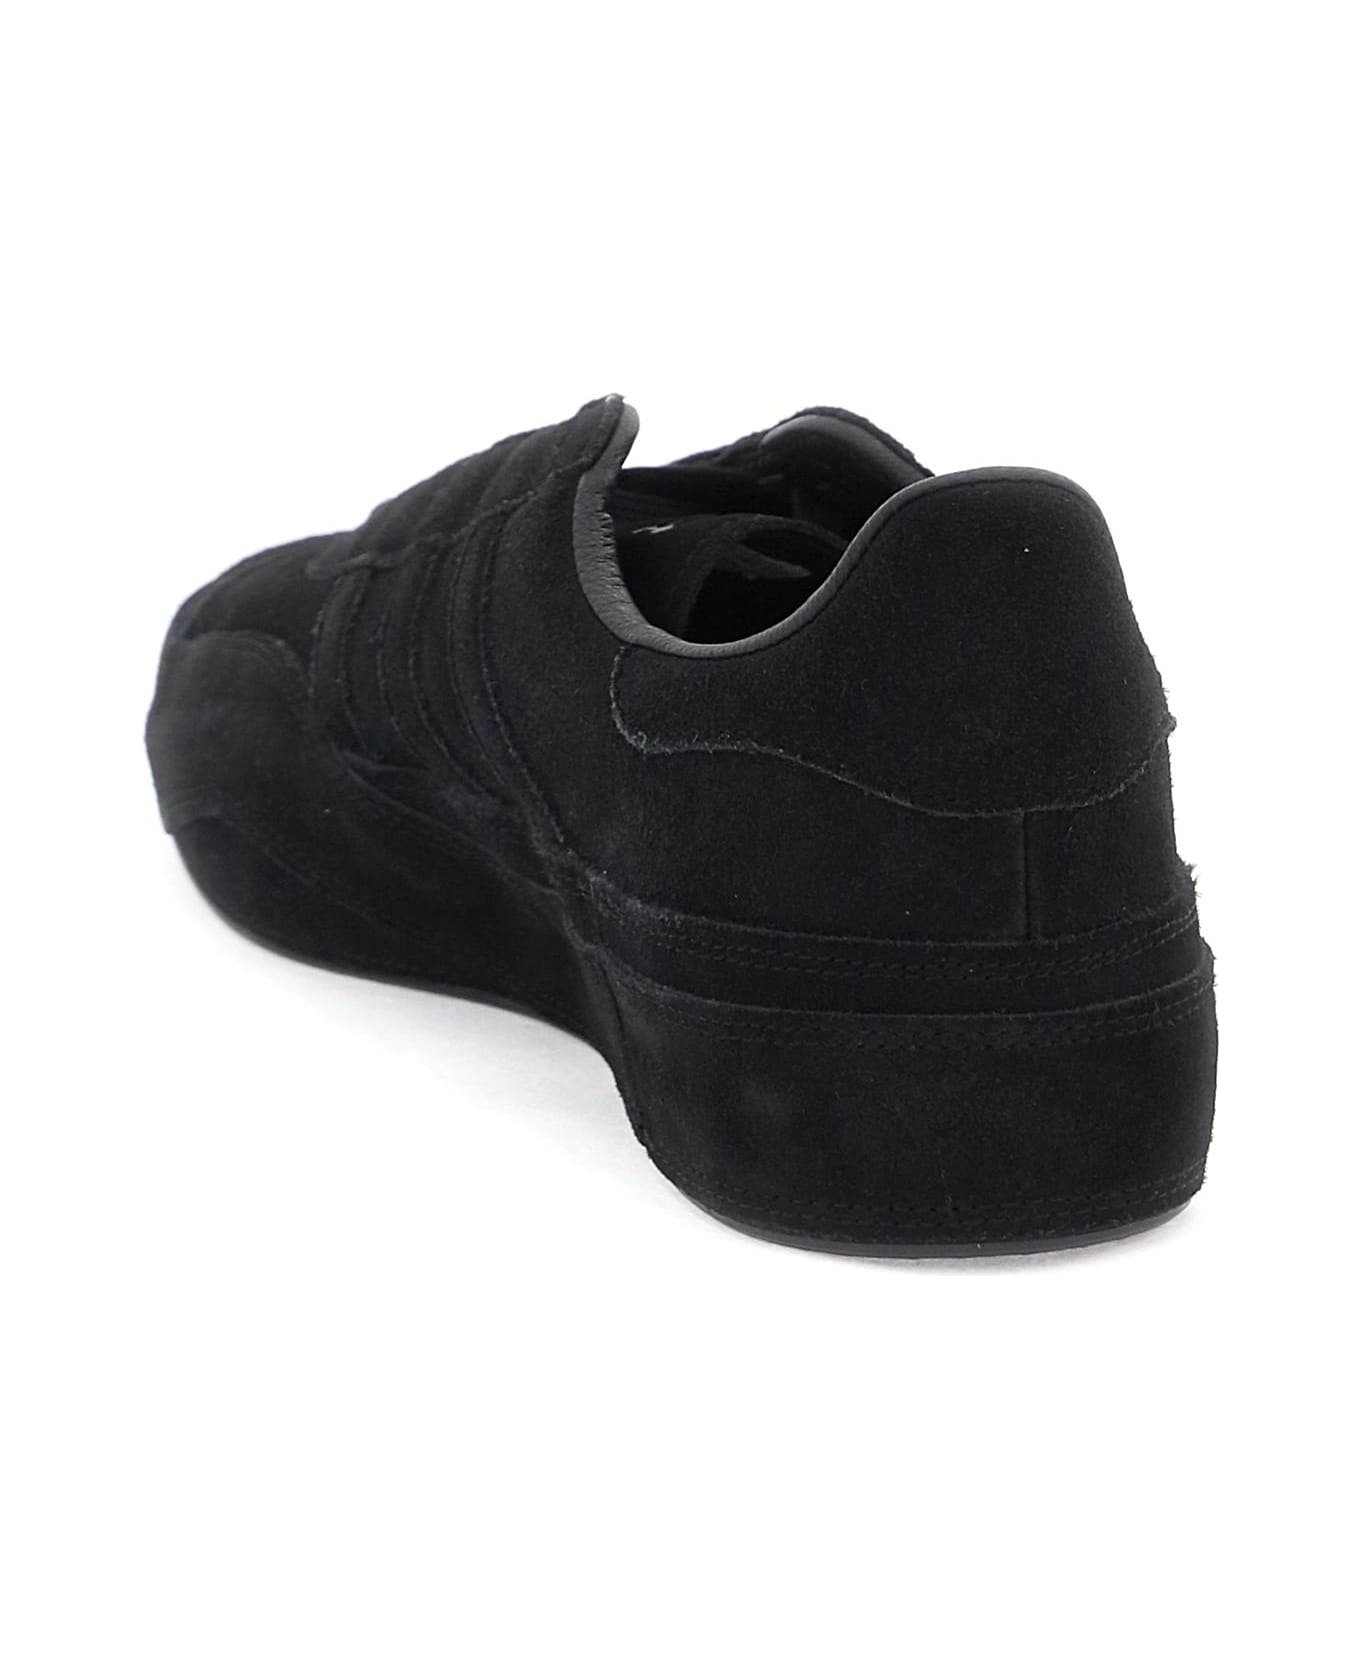 Y-3 Gazzelle Sneakers - BLACK BLACK BLACK (Black)